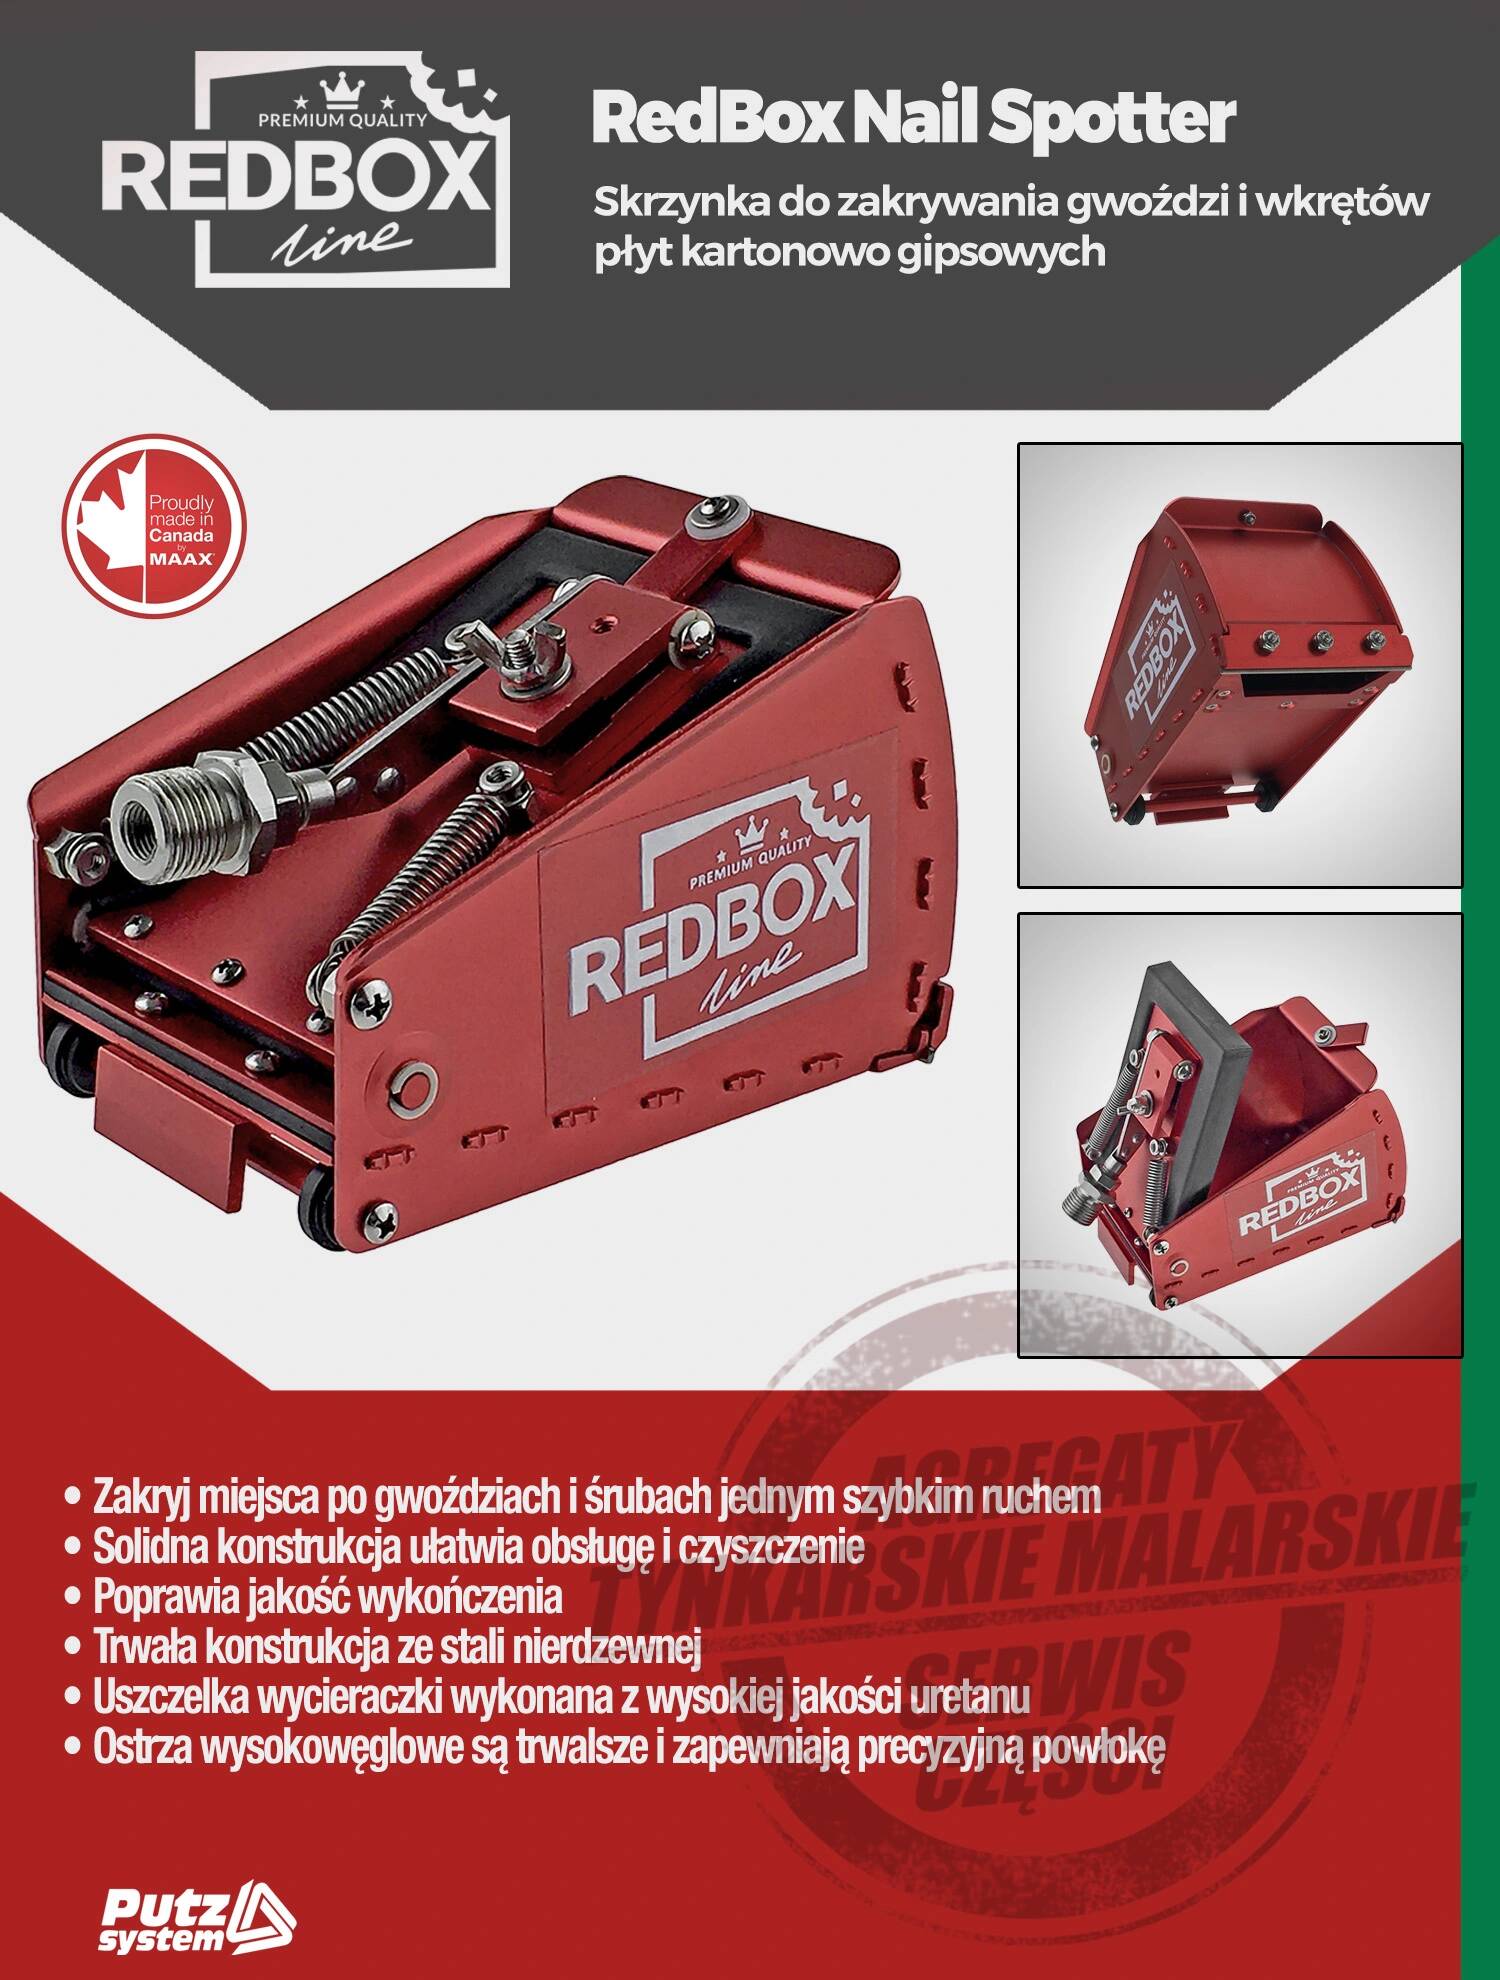 do wkrętów i Skrzynka Skrzynki level śrub cm zakrywania RedBox RedBox 5 - 8